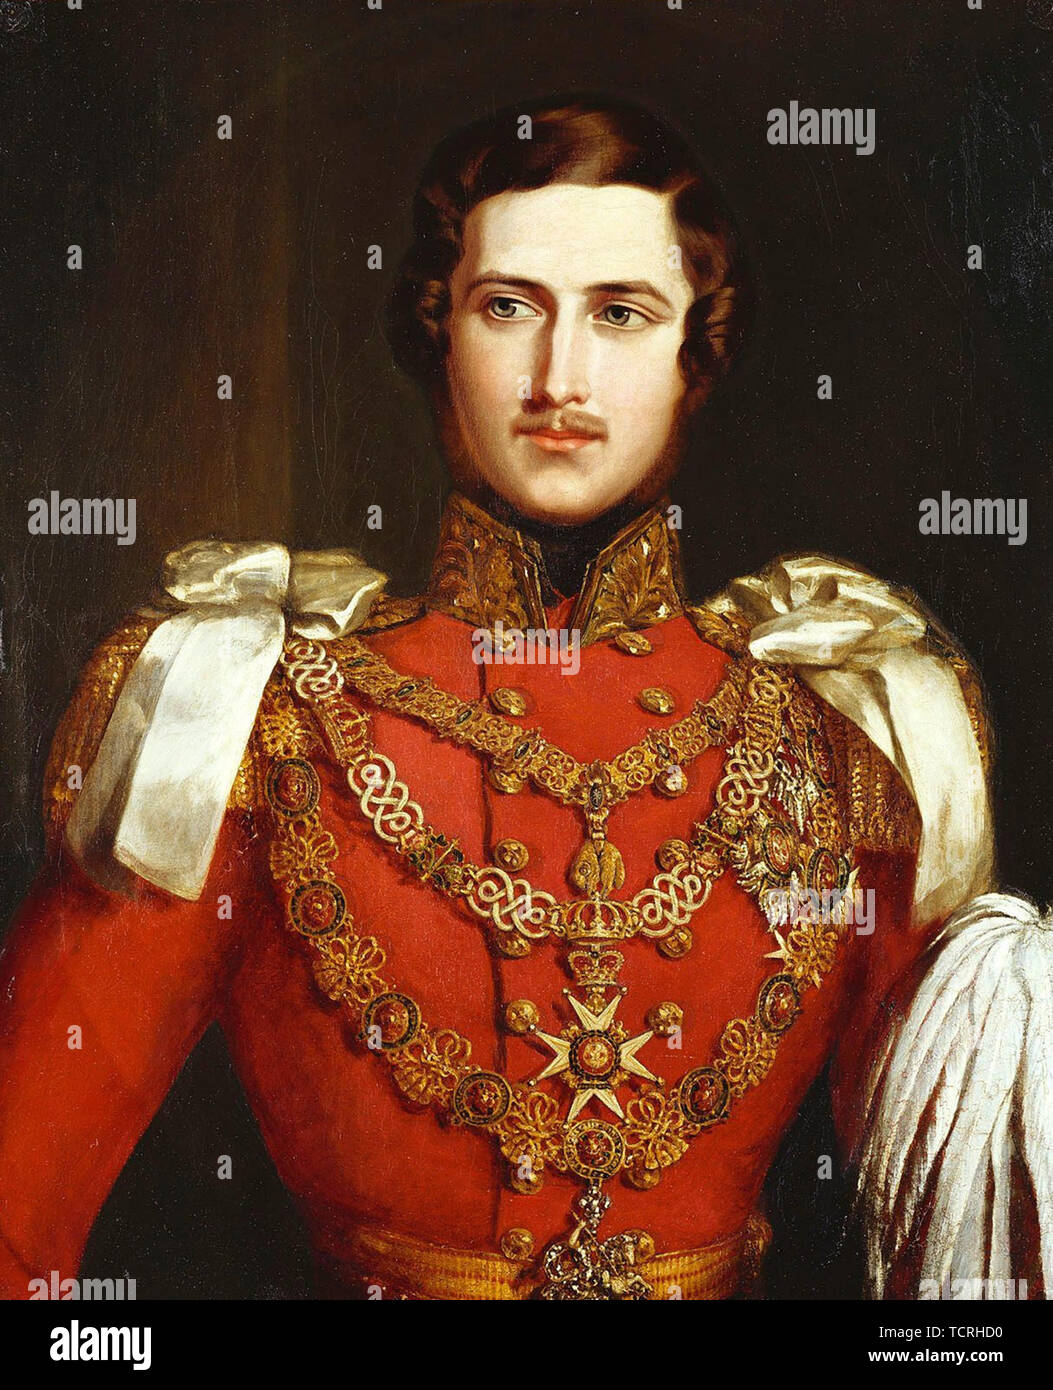 Le Prince Albert de Saxe-cobourg et Gotha (Francis Albert Auguste Charles Emmanuel, 1819 - 1861) était le mari de la reine Victoria. Portrait par John Partridge, 1840 Banque D'Images